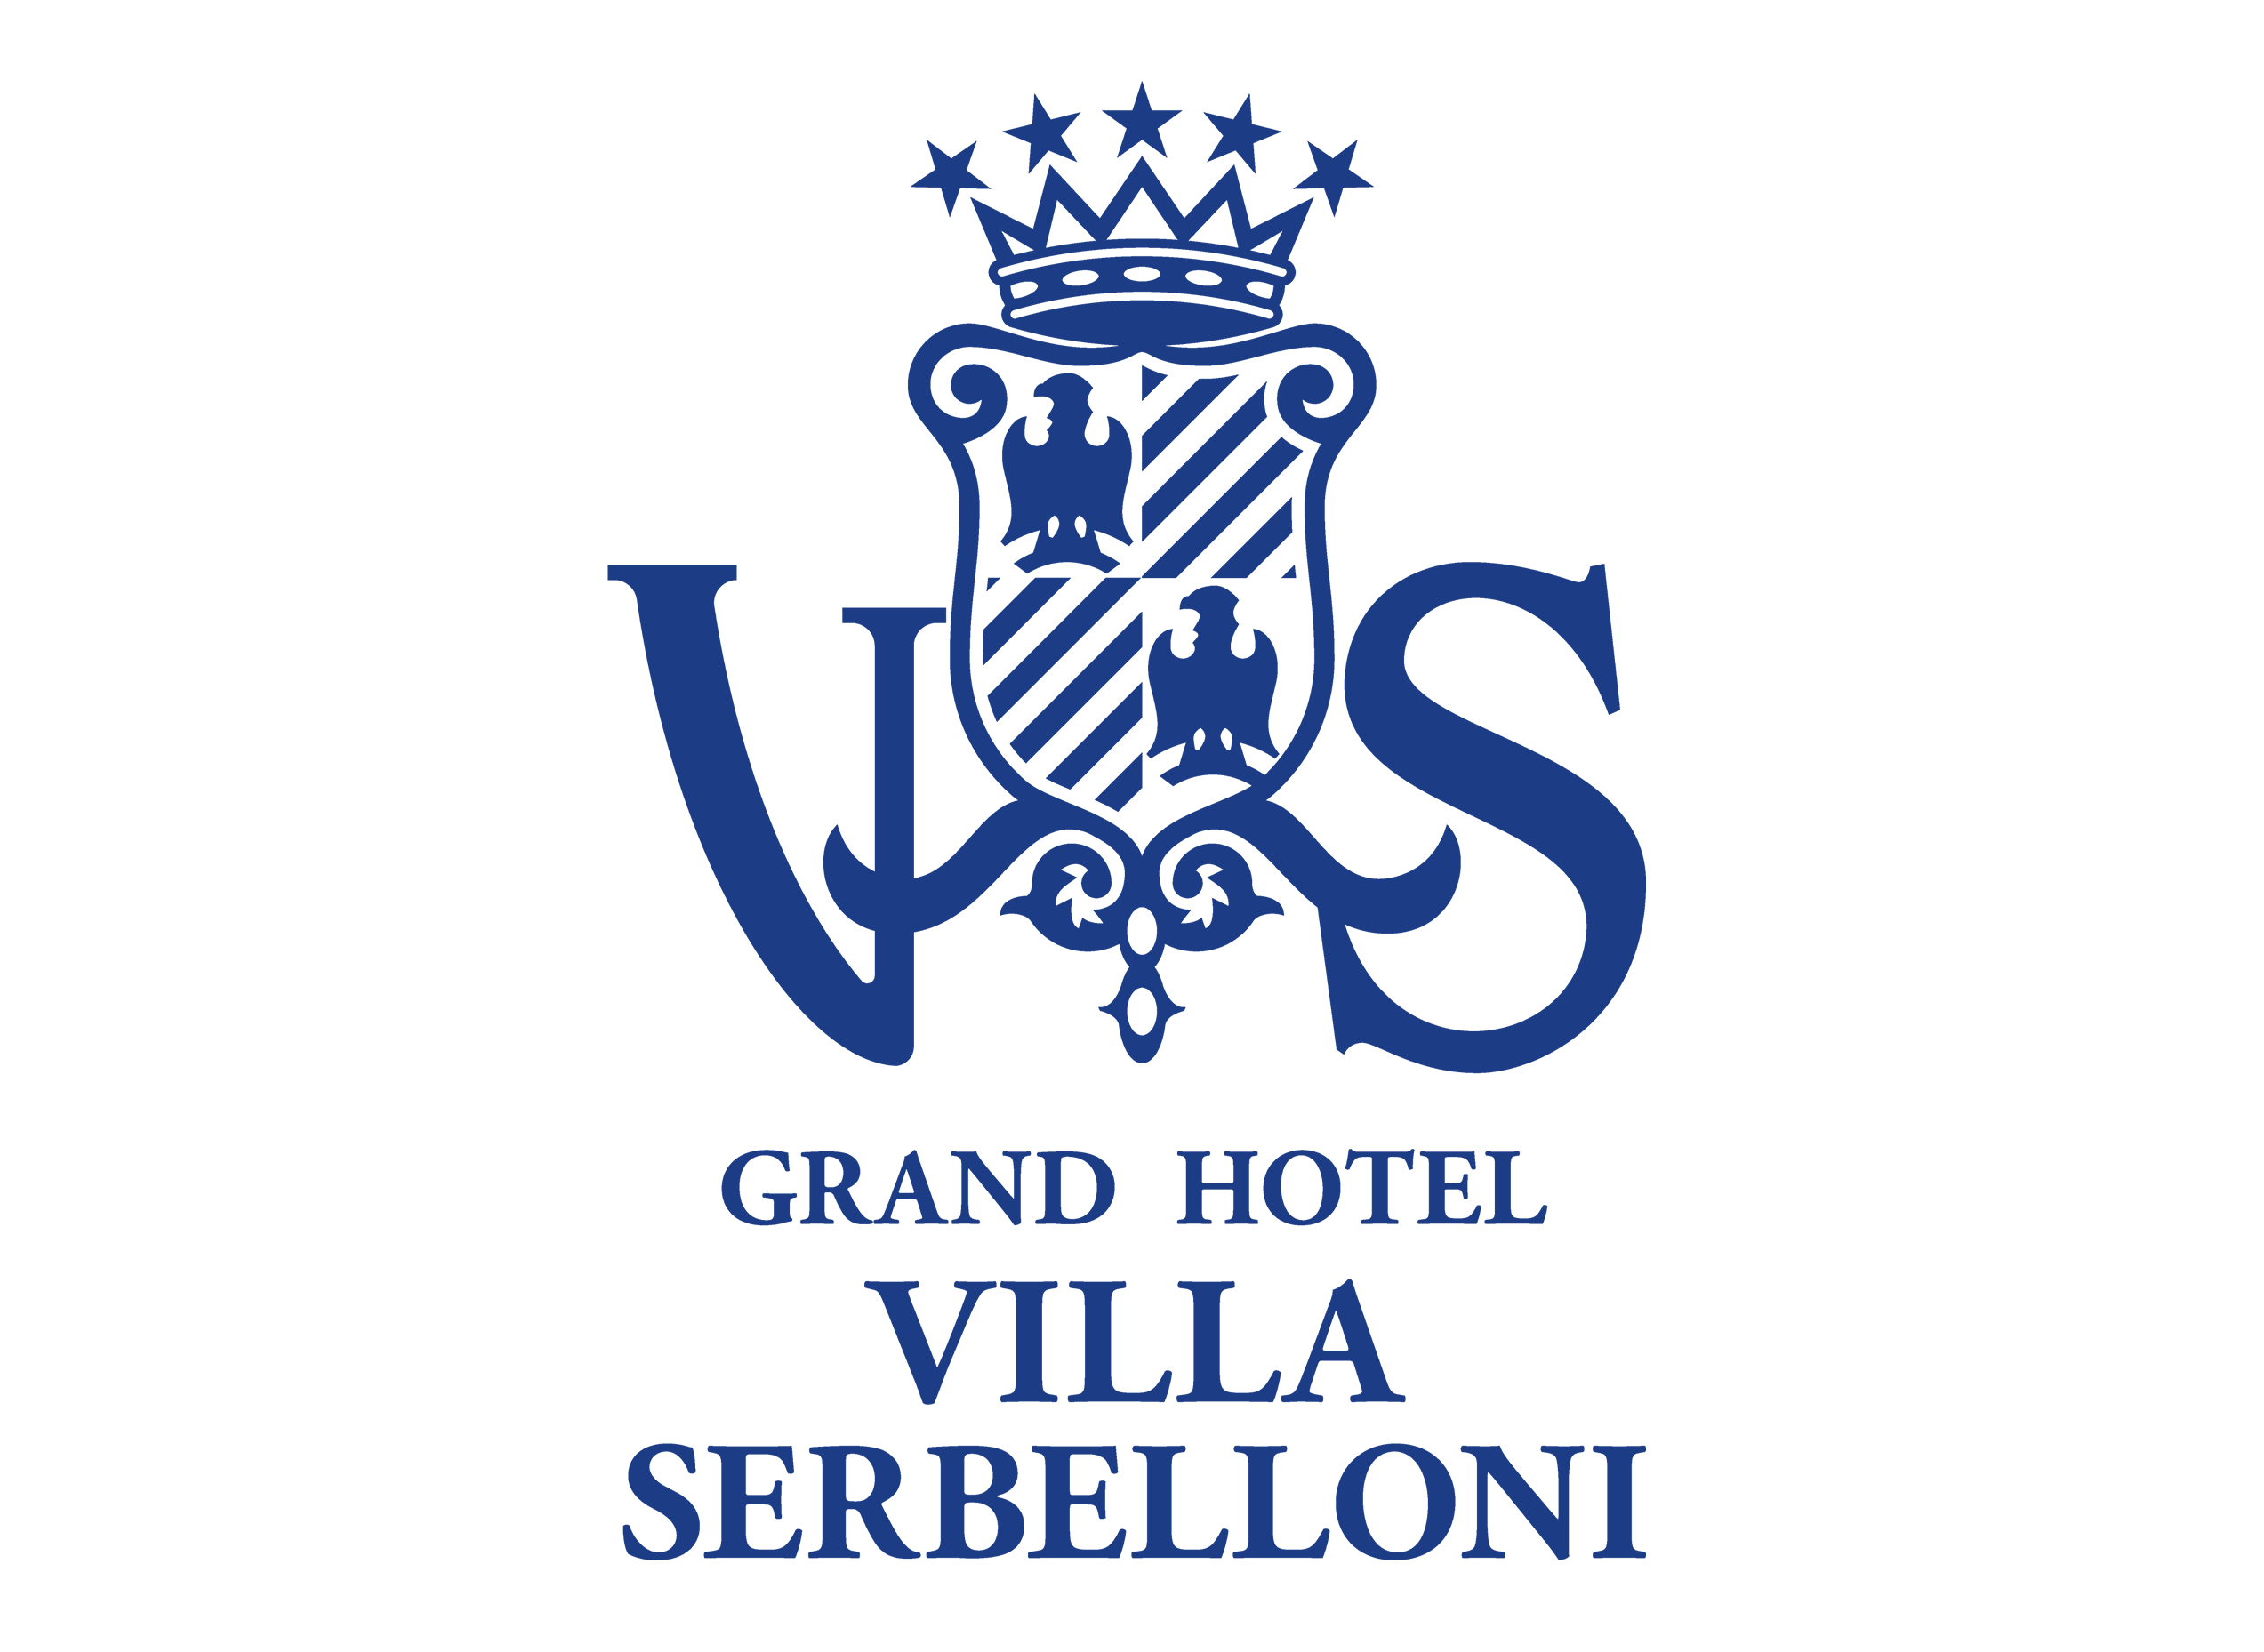 Grand Hotel Villa Serbelloni Home Page